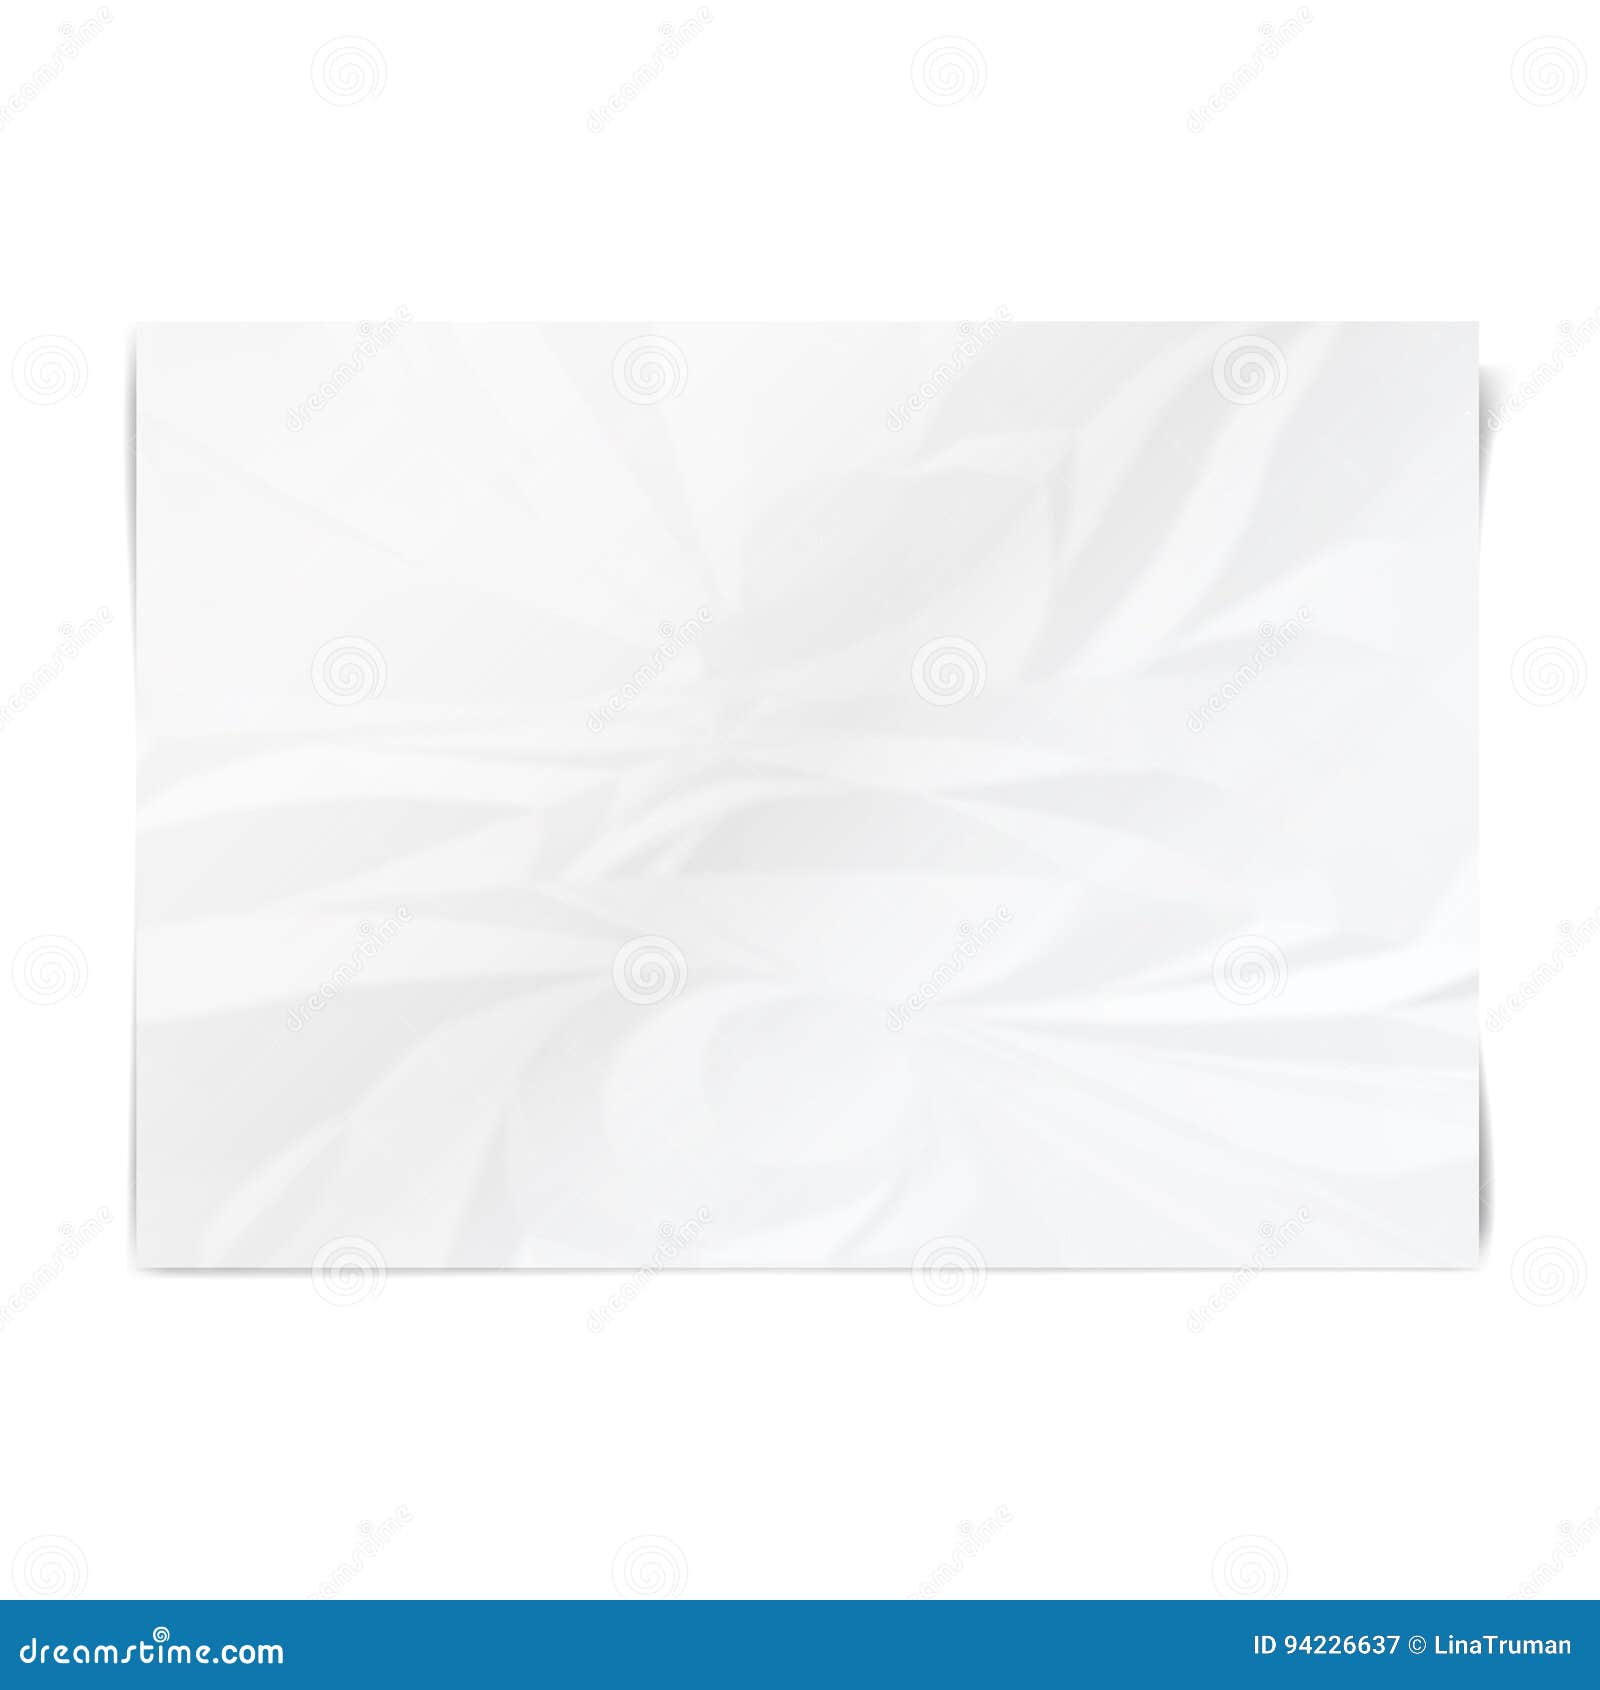 Feuille Blanche Realiste De Papier Chiffonne Texture De Papier Froissee Illustration De Vecteur Illustration Du Blanc Ombre